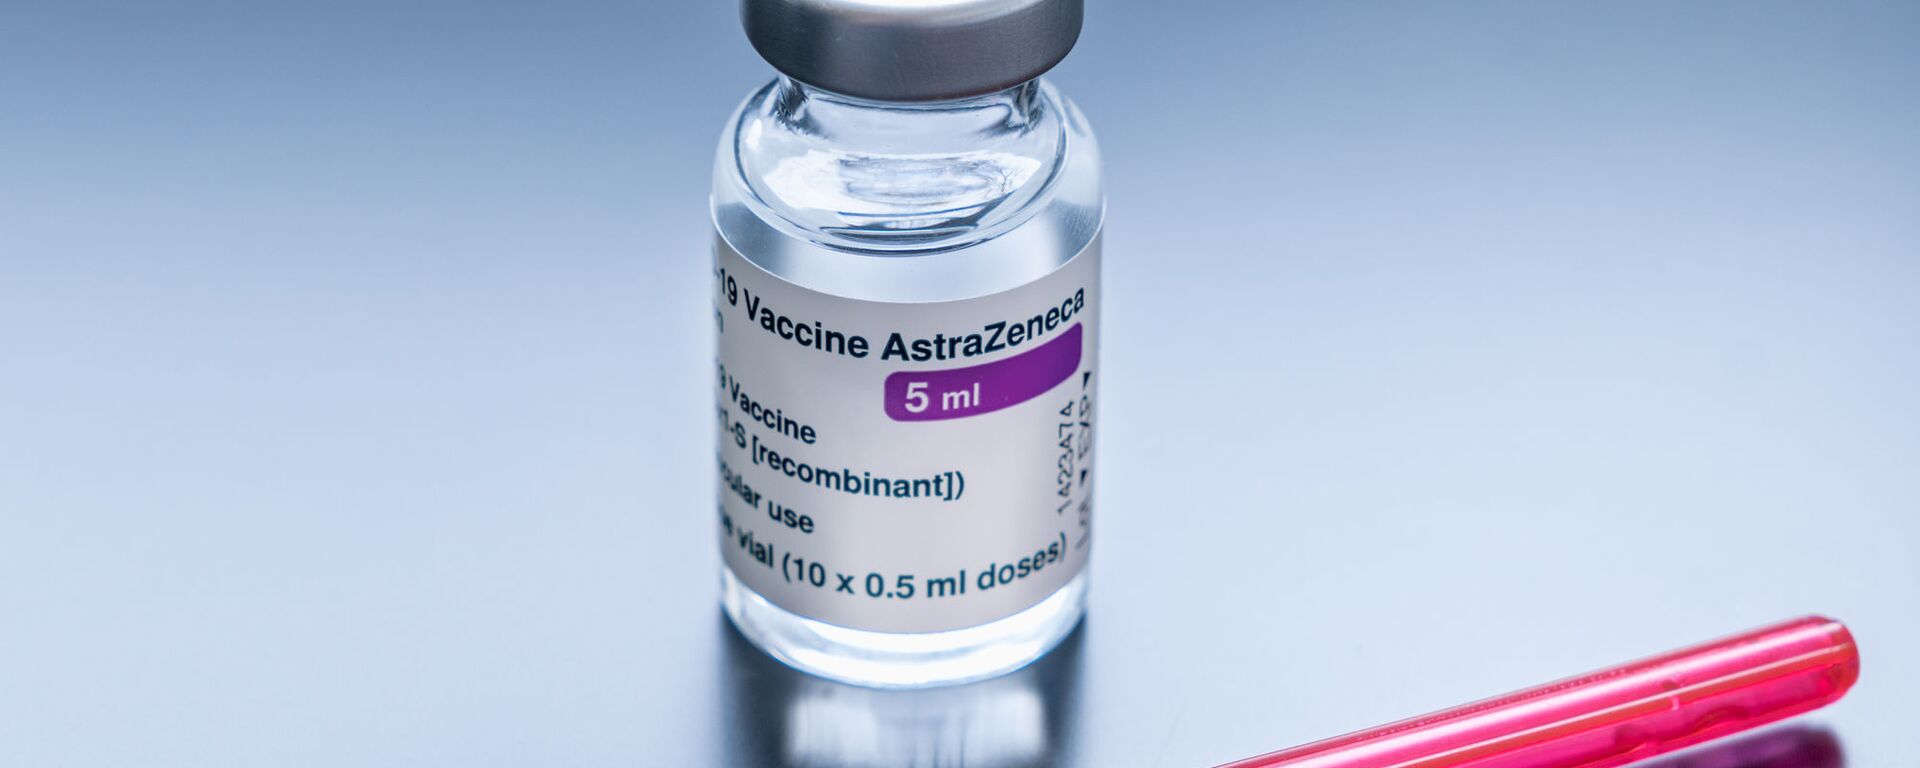 Vaccine AstraZeneca. - Sputnik Việt Nam, 1920, 22.06.2021